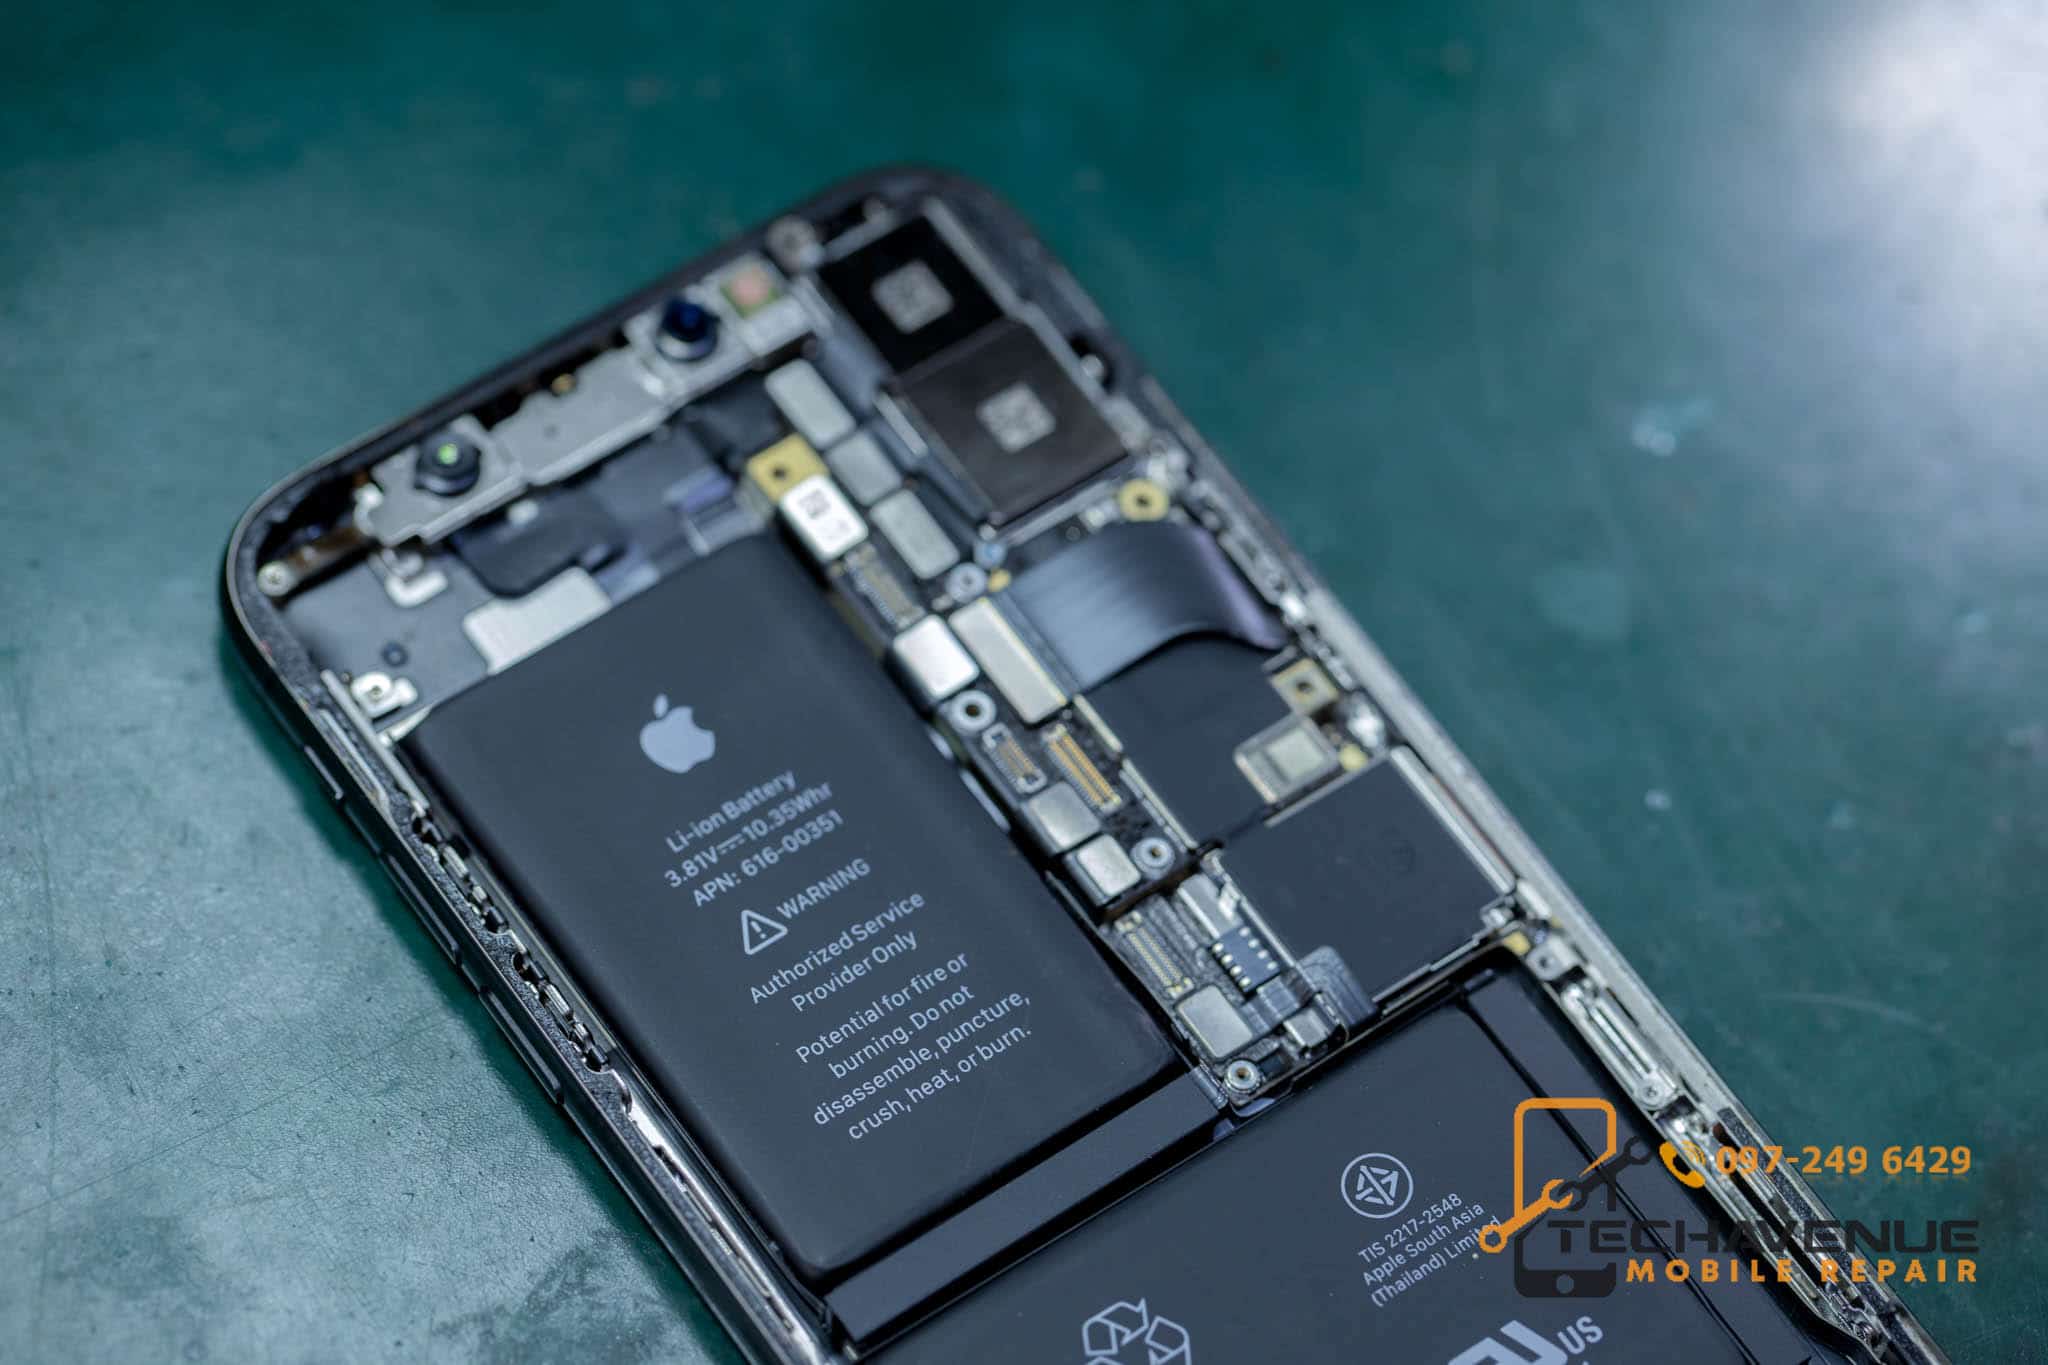 แนะนำ ร้านซ่อมมือถือ แถวจตุจักร ที่ดีที่สุด 🥇 ศูนย์ซ่อม โทรศัพท์มือถือ มือถือทุกรุ่น ทุกยี่ห้อ iPhone | Apple | Samsung | Huawei